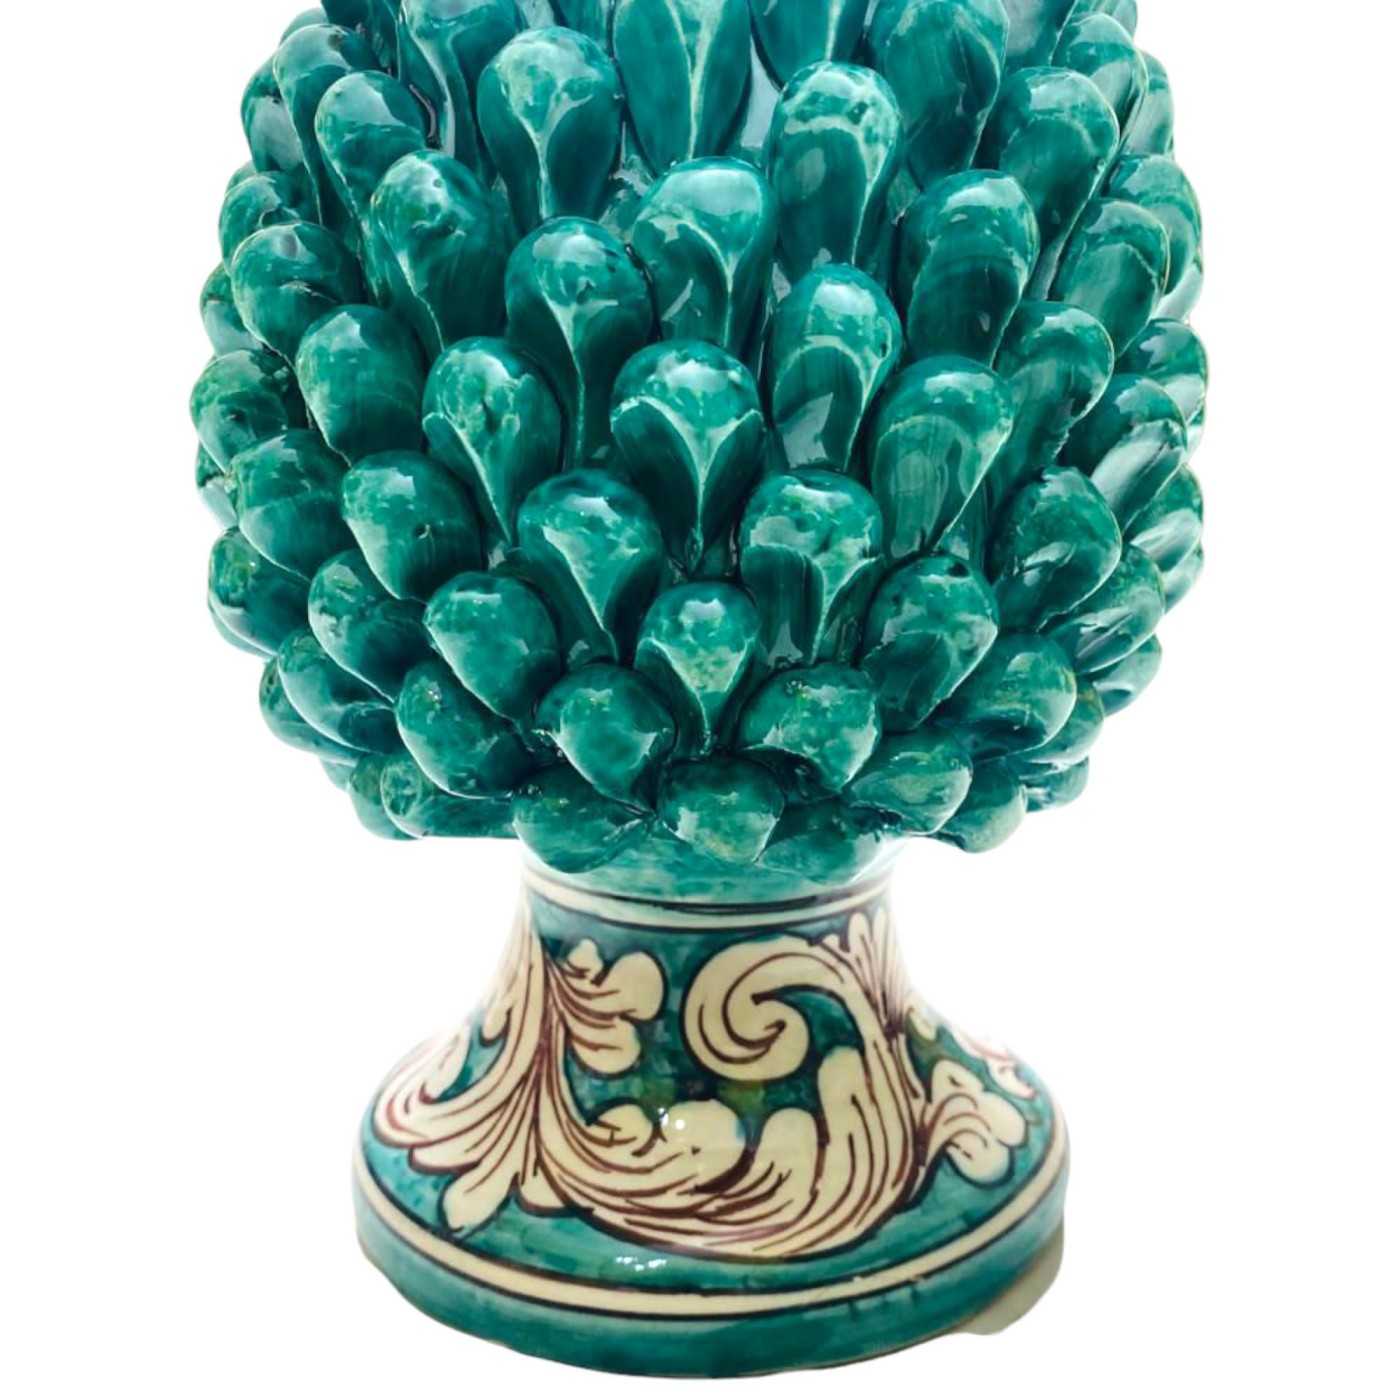 Lume Pigna Siciliana in ceramica Caltagirone - h 50 cm ca. Verderame e  gambo decoro barocco bianco su fondo verde